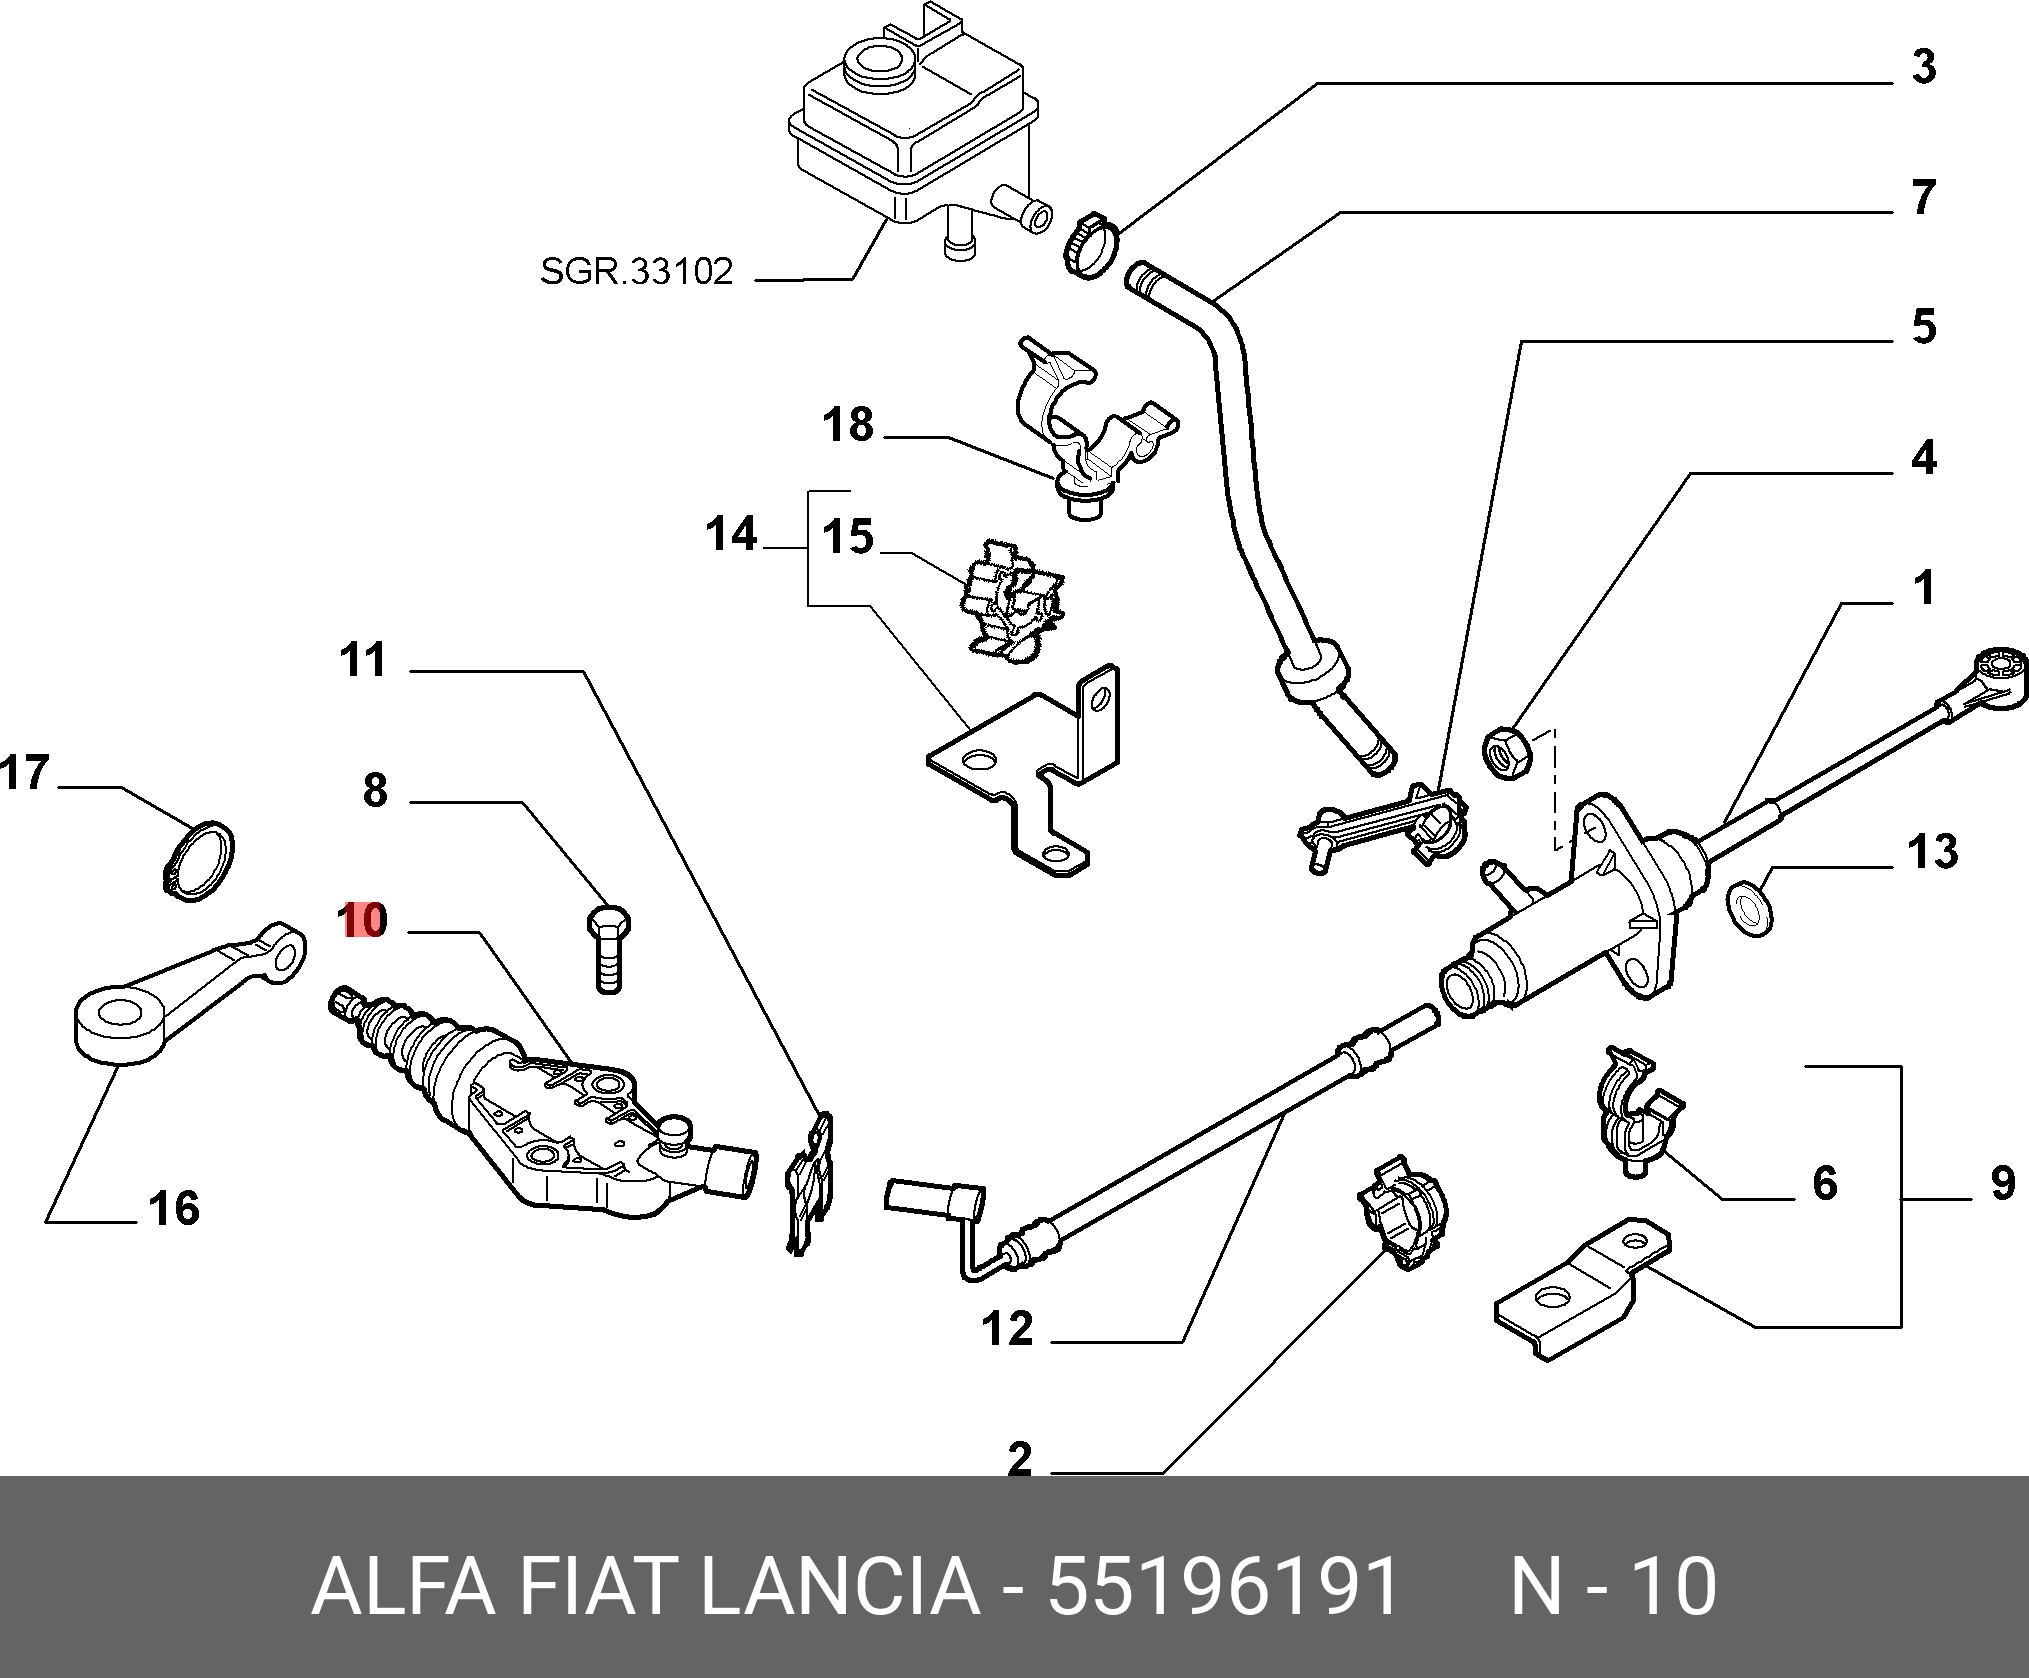 Добло цилиндр сцепления. Педаль сцепление Fiat Albea 1.4 схема. Главный цилиндр сцепления Фиат Альбеа 1.4. Рабочий цилиндр сцепления Фиат Альбеа 1.4. Фиат Альбеа привод сцепления.